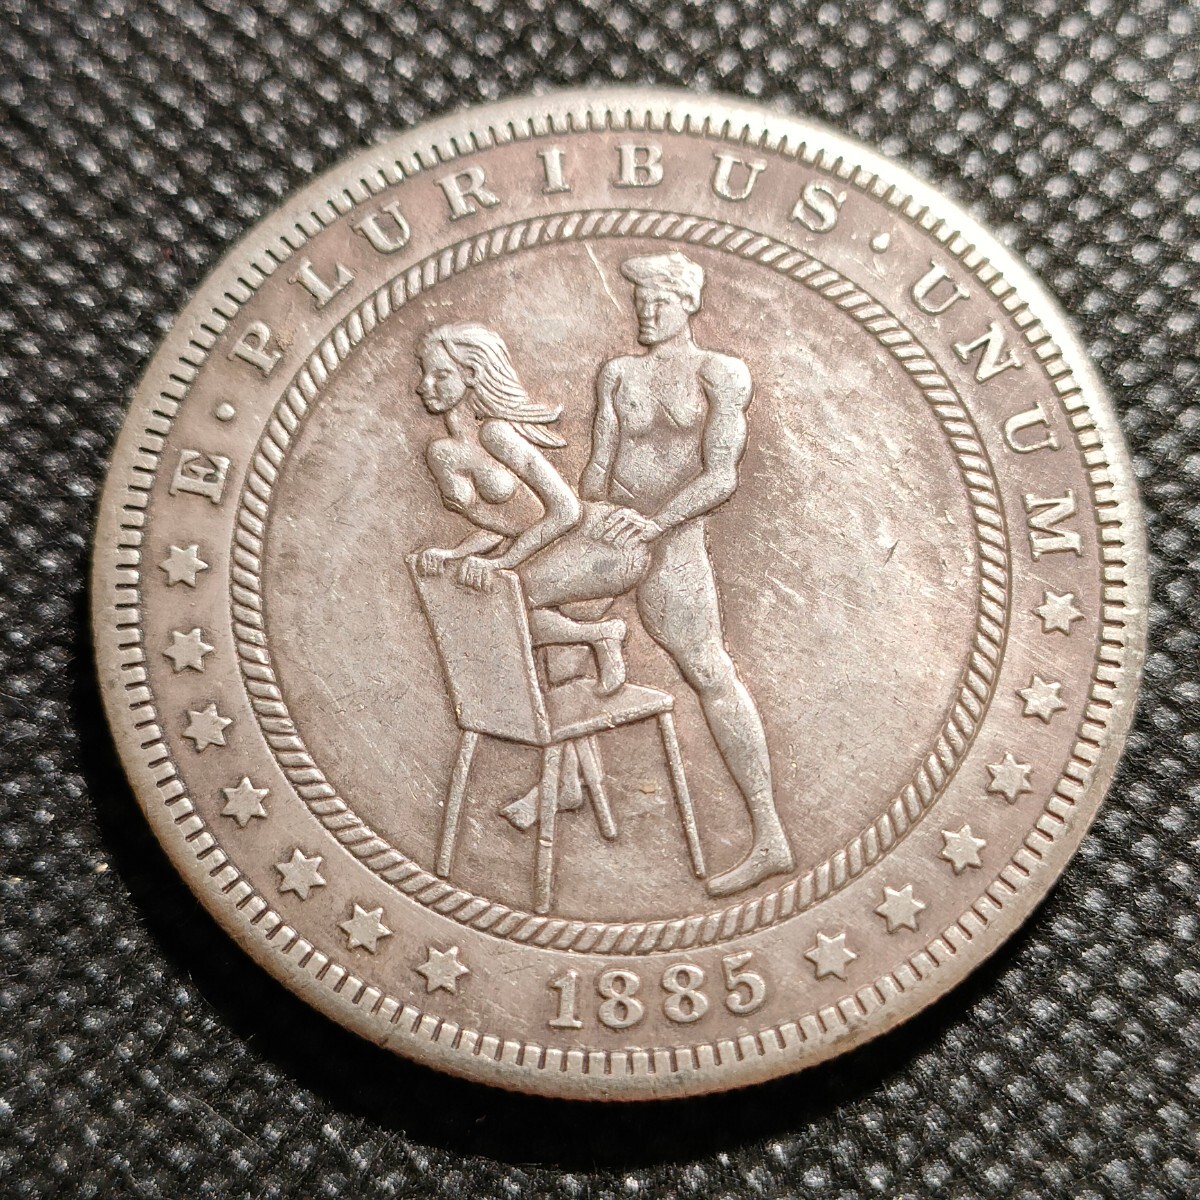 7108 アメリカ古銭 ルンペン 約38mm イーグル チャレンジコイン ゴルフマーカー コイン アンティーク ホーボーの画像1